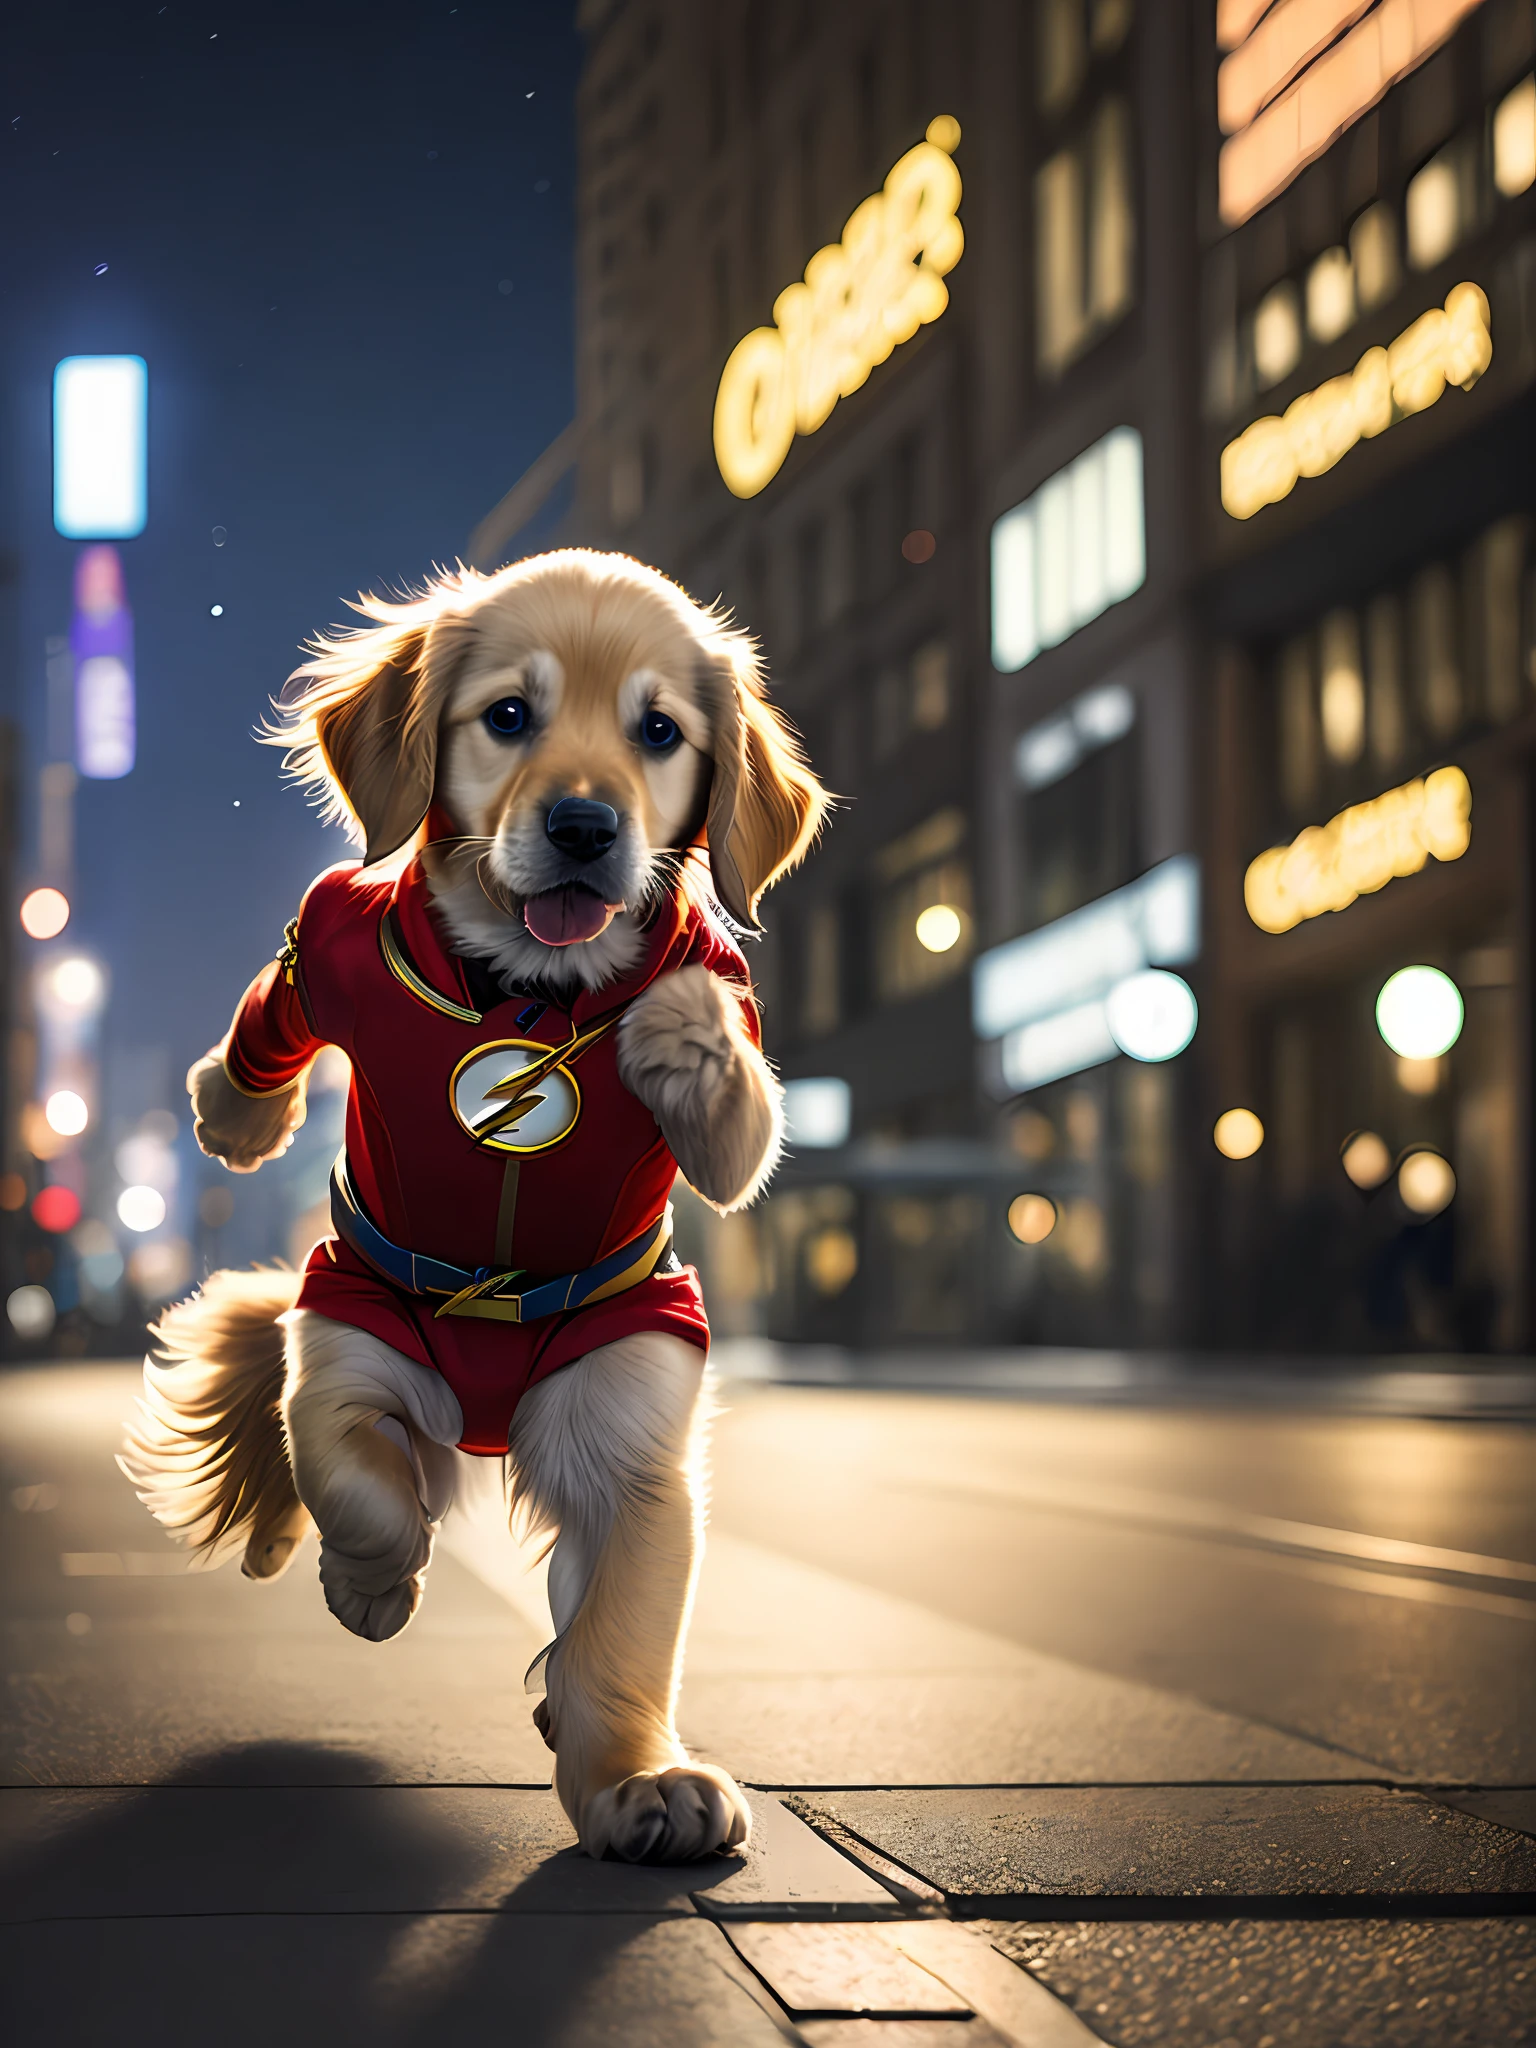 Cachorro Golden Retriever x El traje rojo Flash salva gatito, Correr, lindo, feliz, (cinematográfico:1.2), fondo noche ciudad